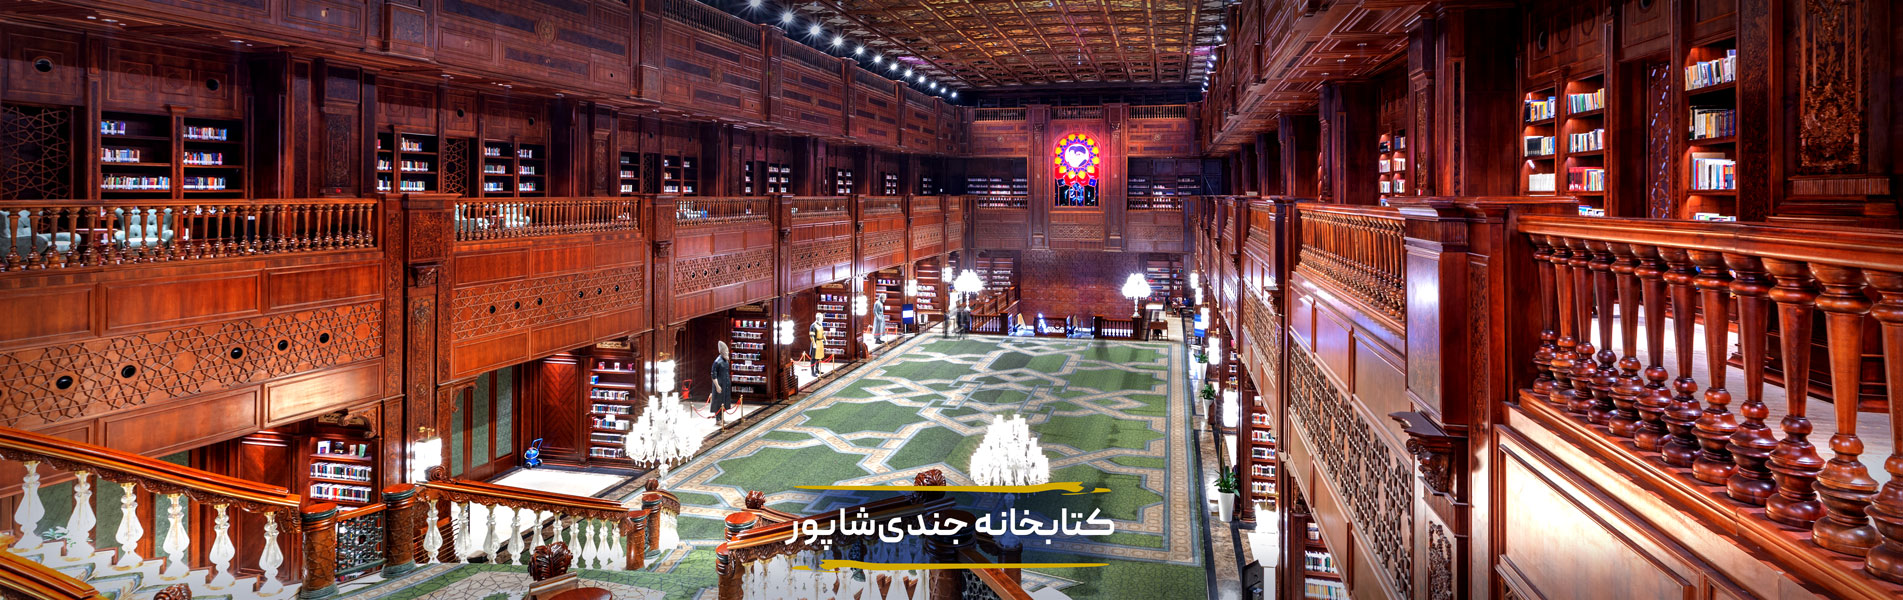 کتبخانه جندی شاپور